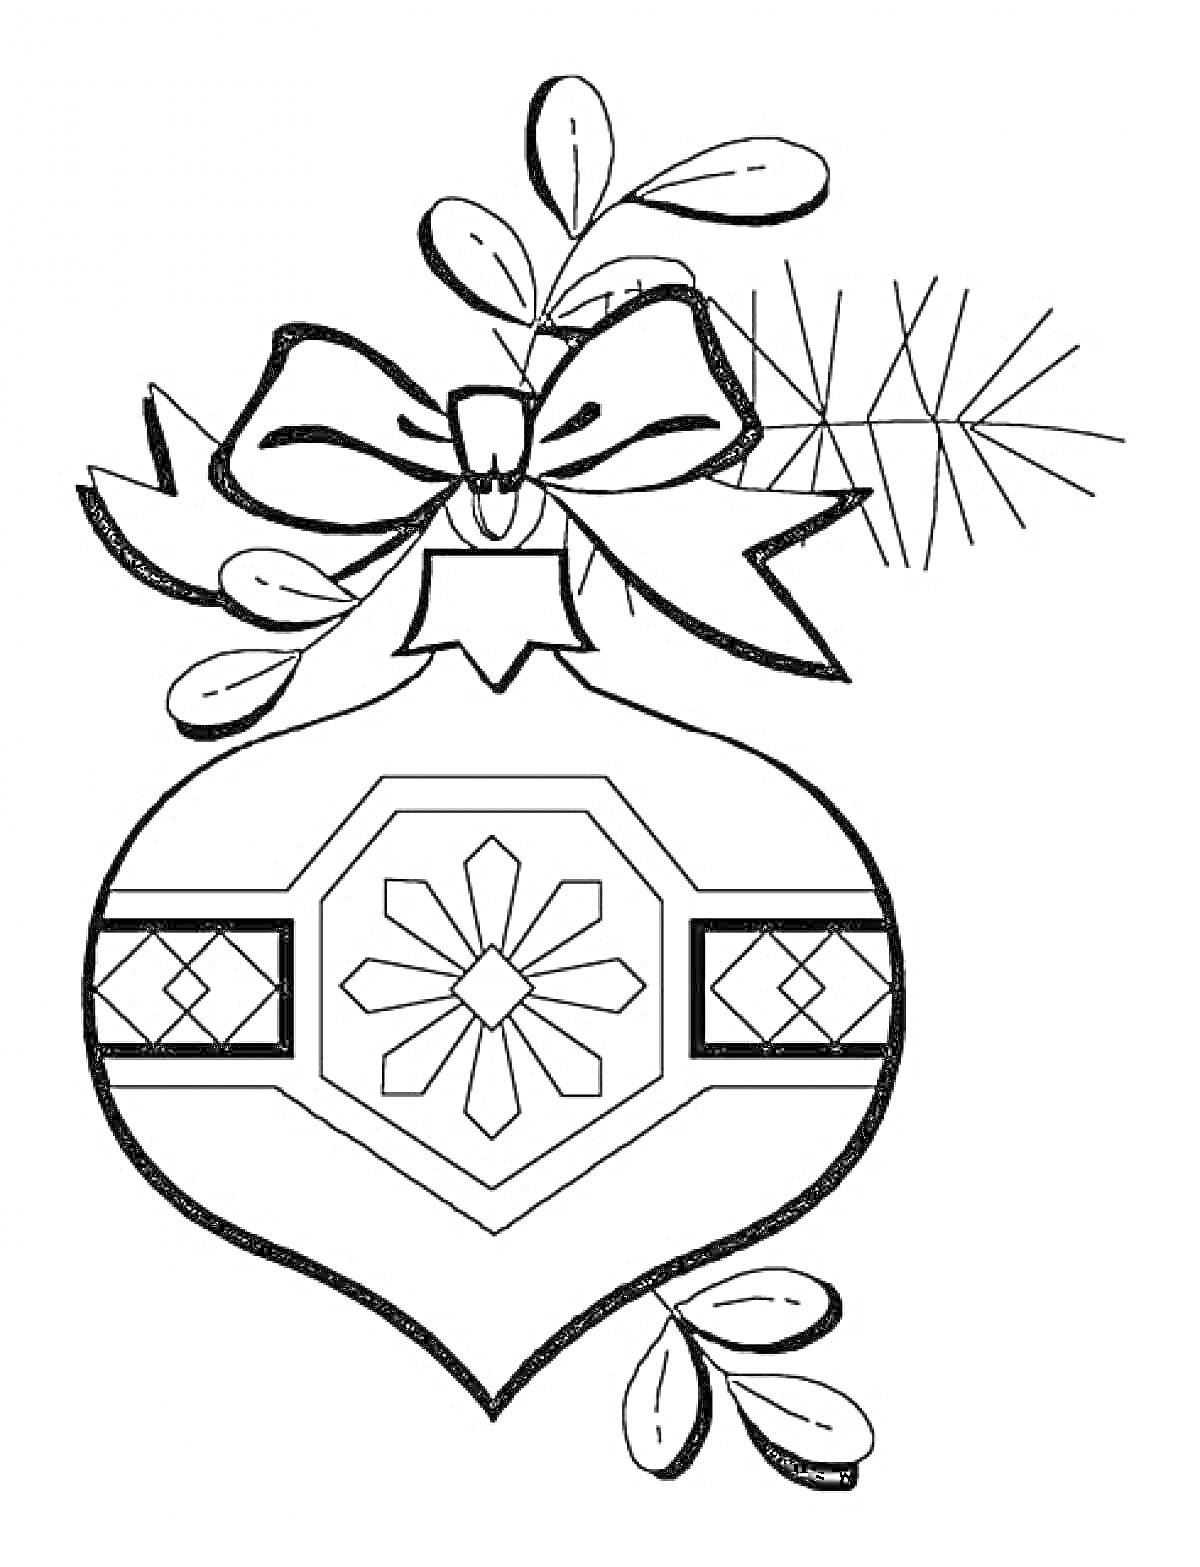 Раскраска Ёлочная игрушка с бантом, ветками и листьями, орнамент в виде снежинки и крестов